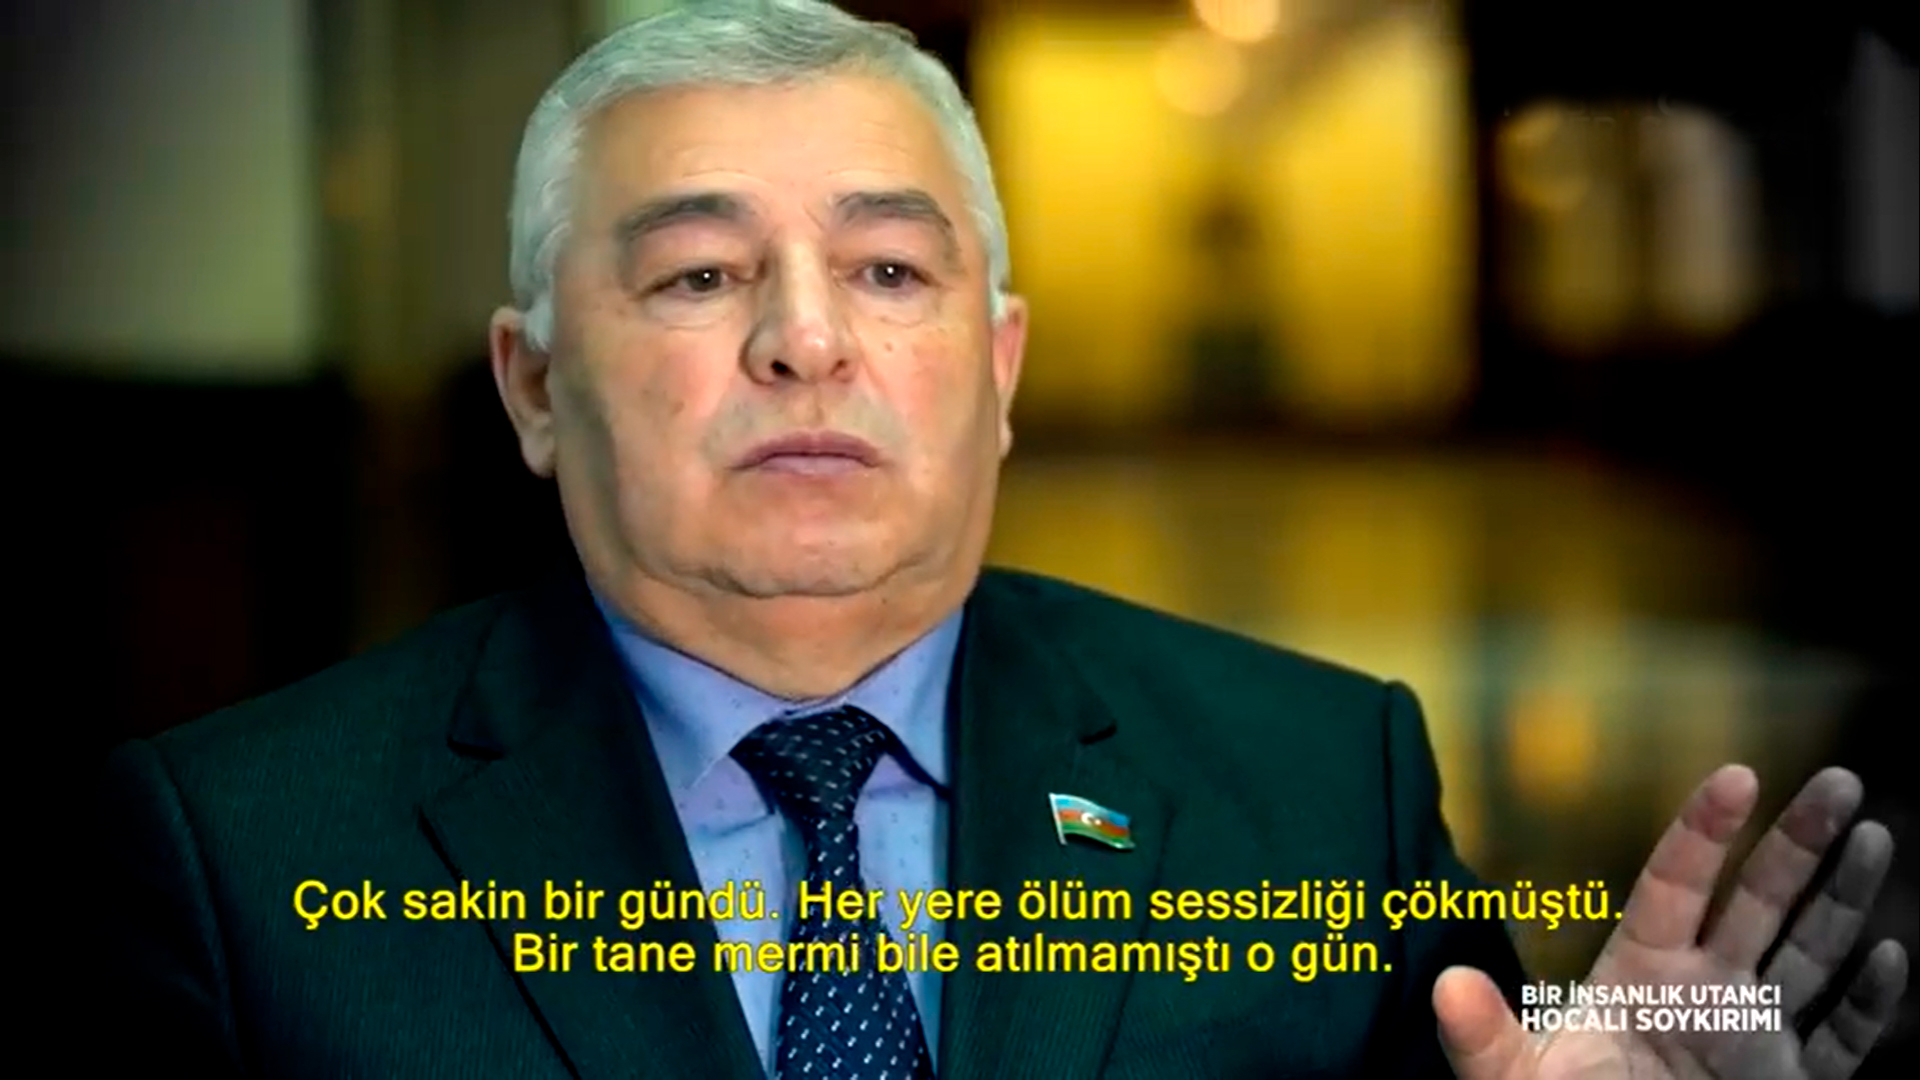 Турецкий телеканал посвятил документальный фильм Ходжалинскому геноциду - ВИДЕО